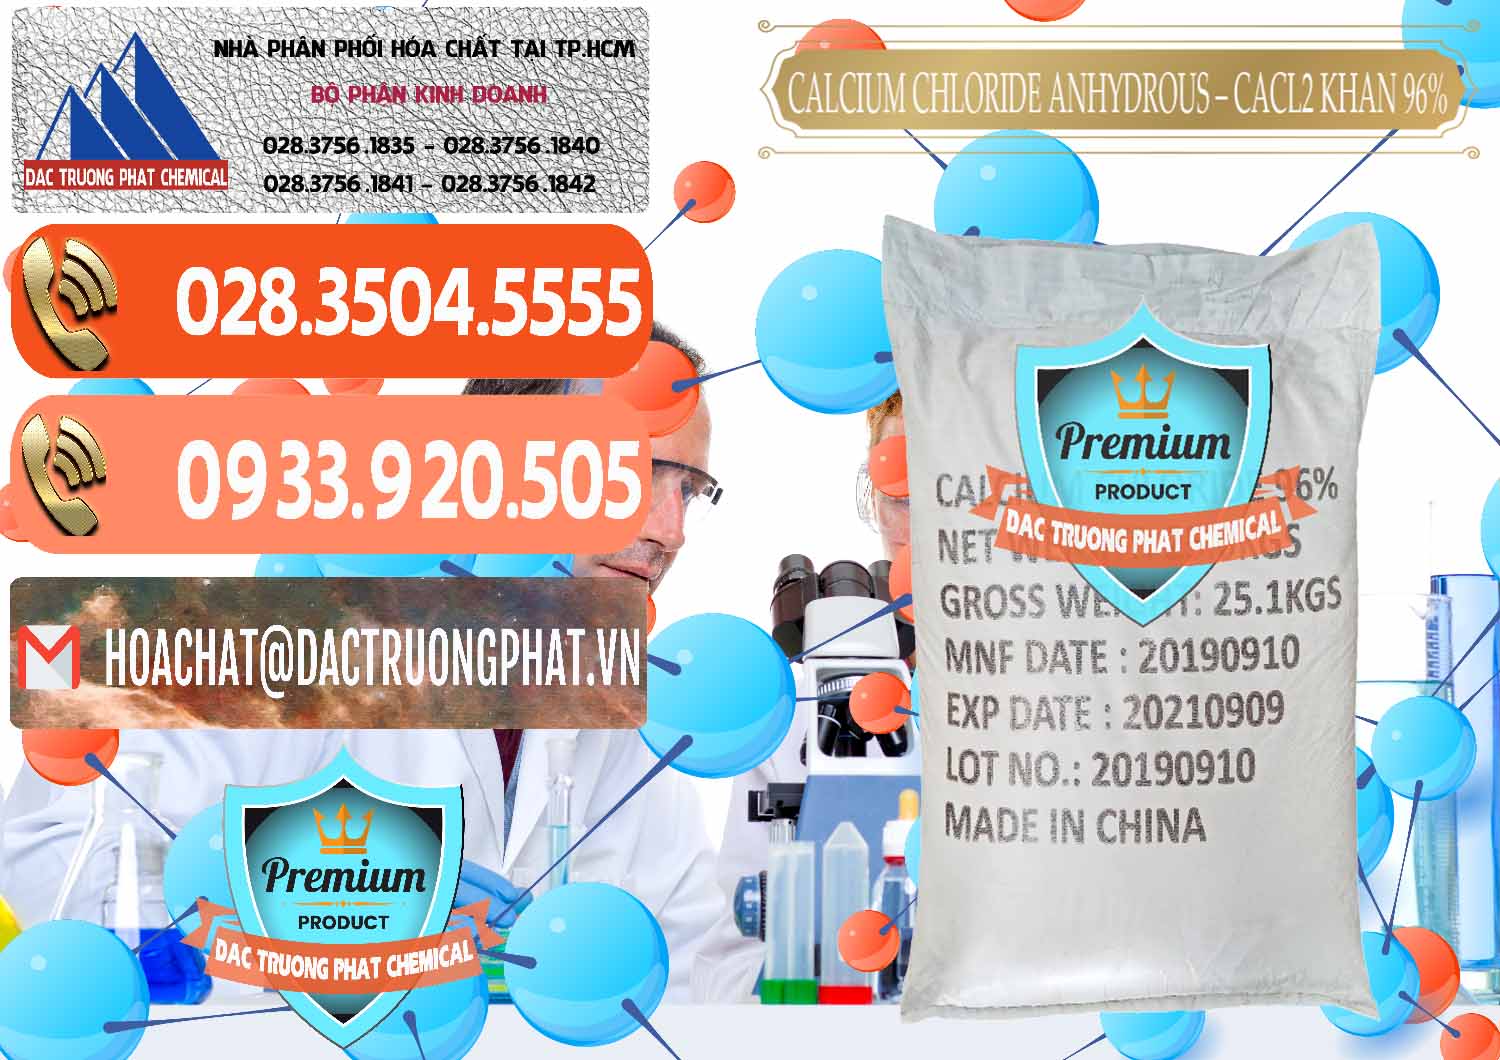 Nơi bán - cung ứng CaCl2 – Canxi Clorua Anhydrous Khan 96% Trung Quốc China - 0043 - Cty chuyên nhập khẩu & phân phối hóa chất tại TP.HCM - hoachatmientay.com